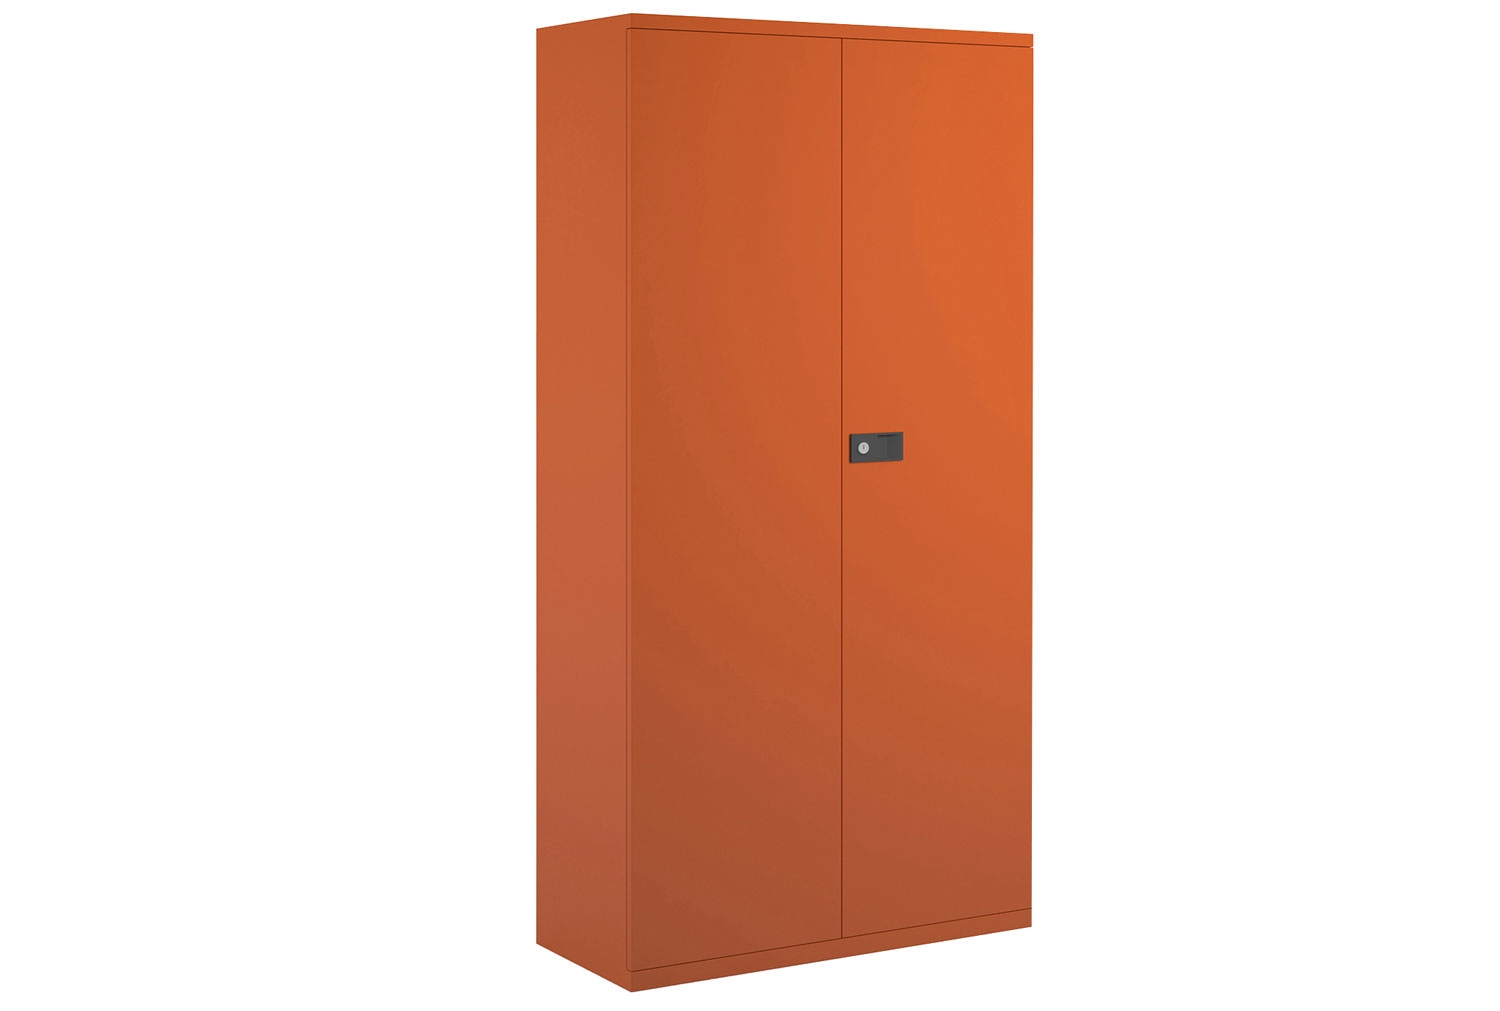 Economy Double Door Office Cupboards, 4 Shelf - 91wx40dx197h (cm), Orange